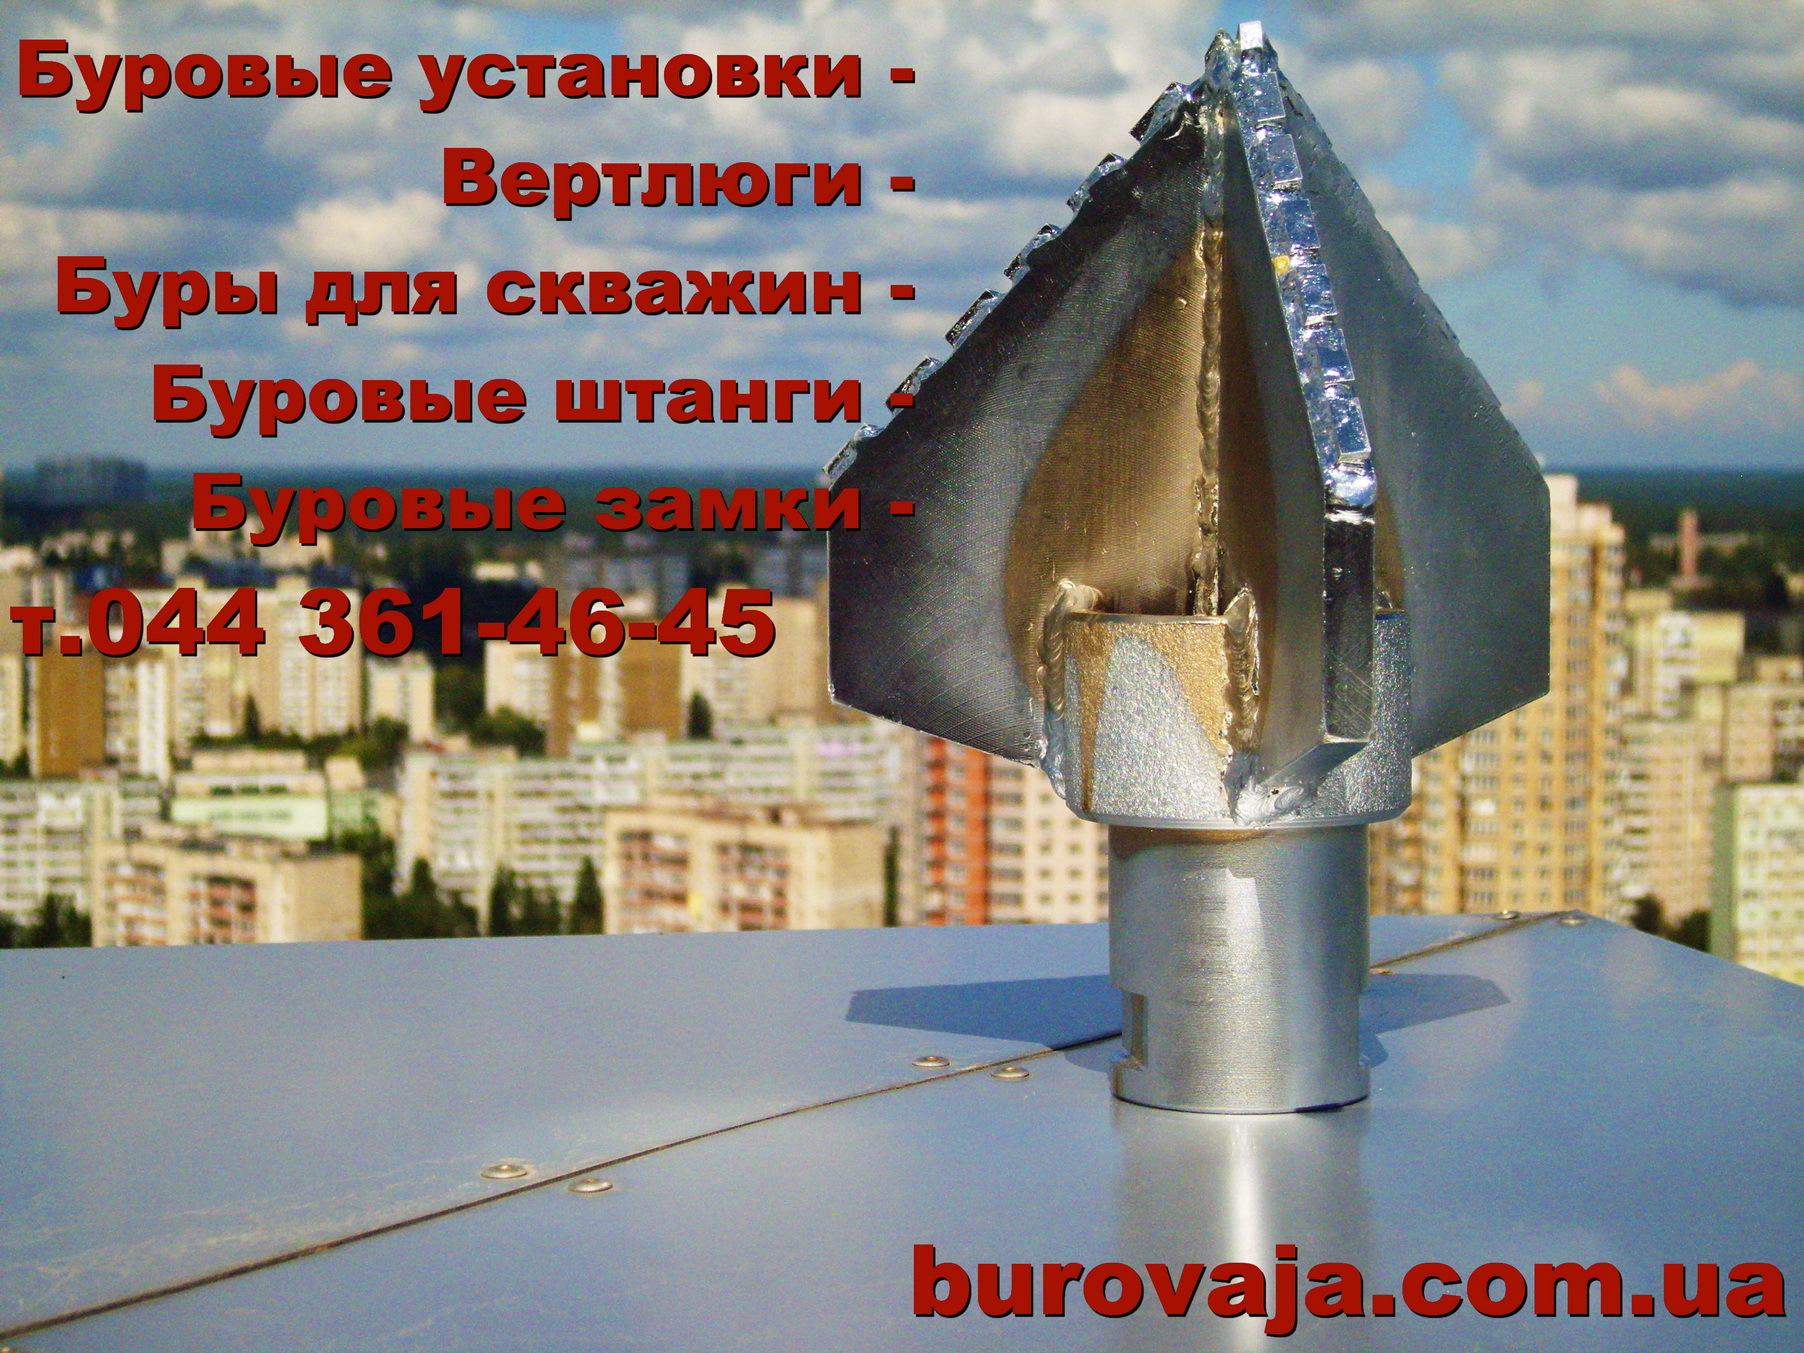 Шнеки для бурения скважин купить по цене производителя в Екатеринбурге | Шнеки ШБ